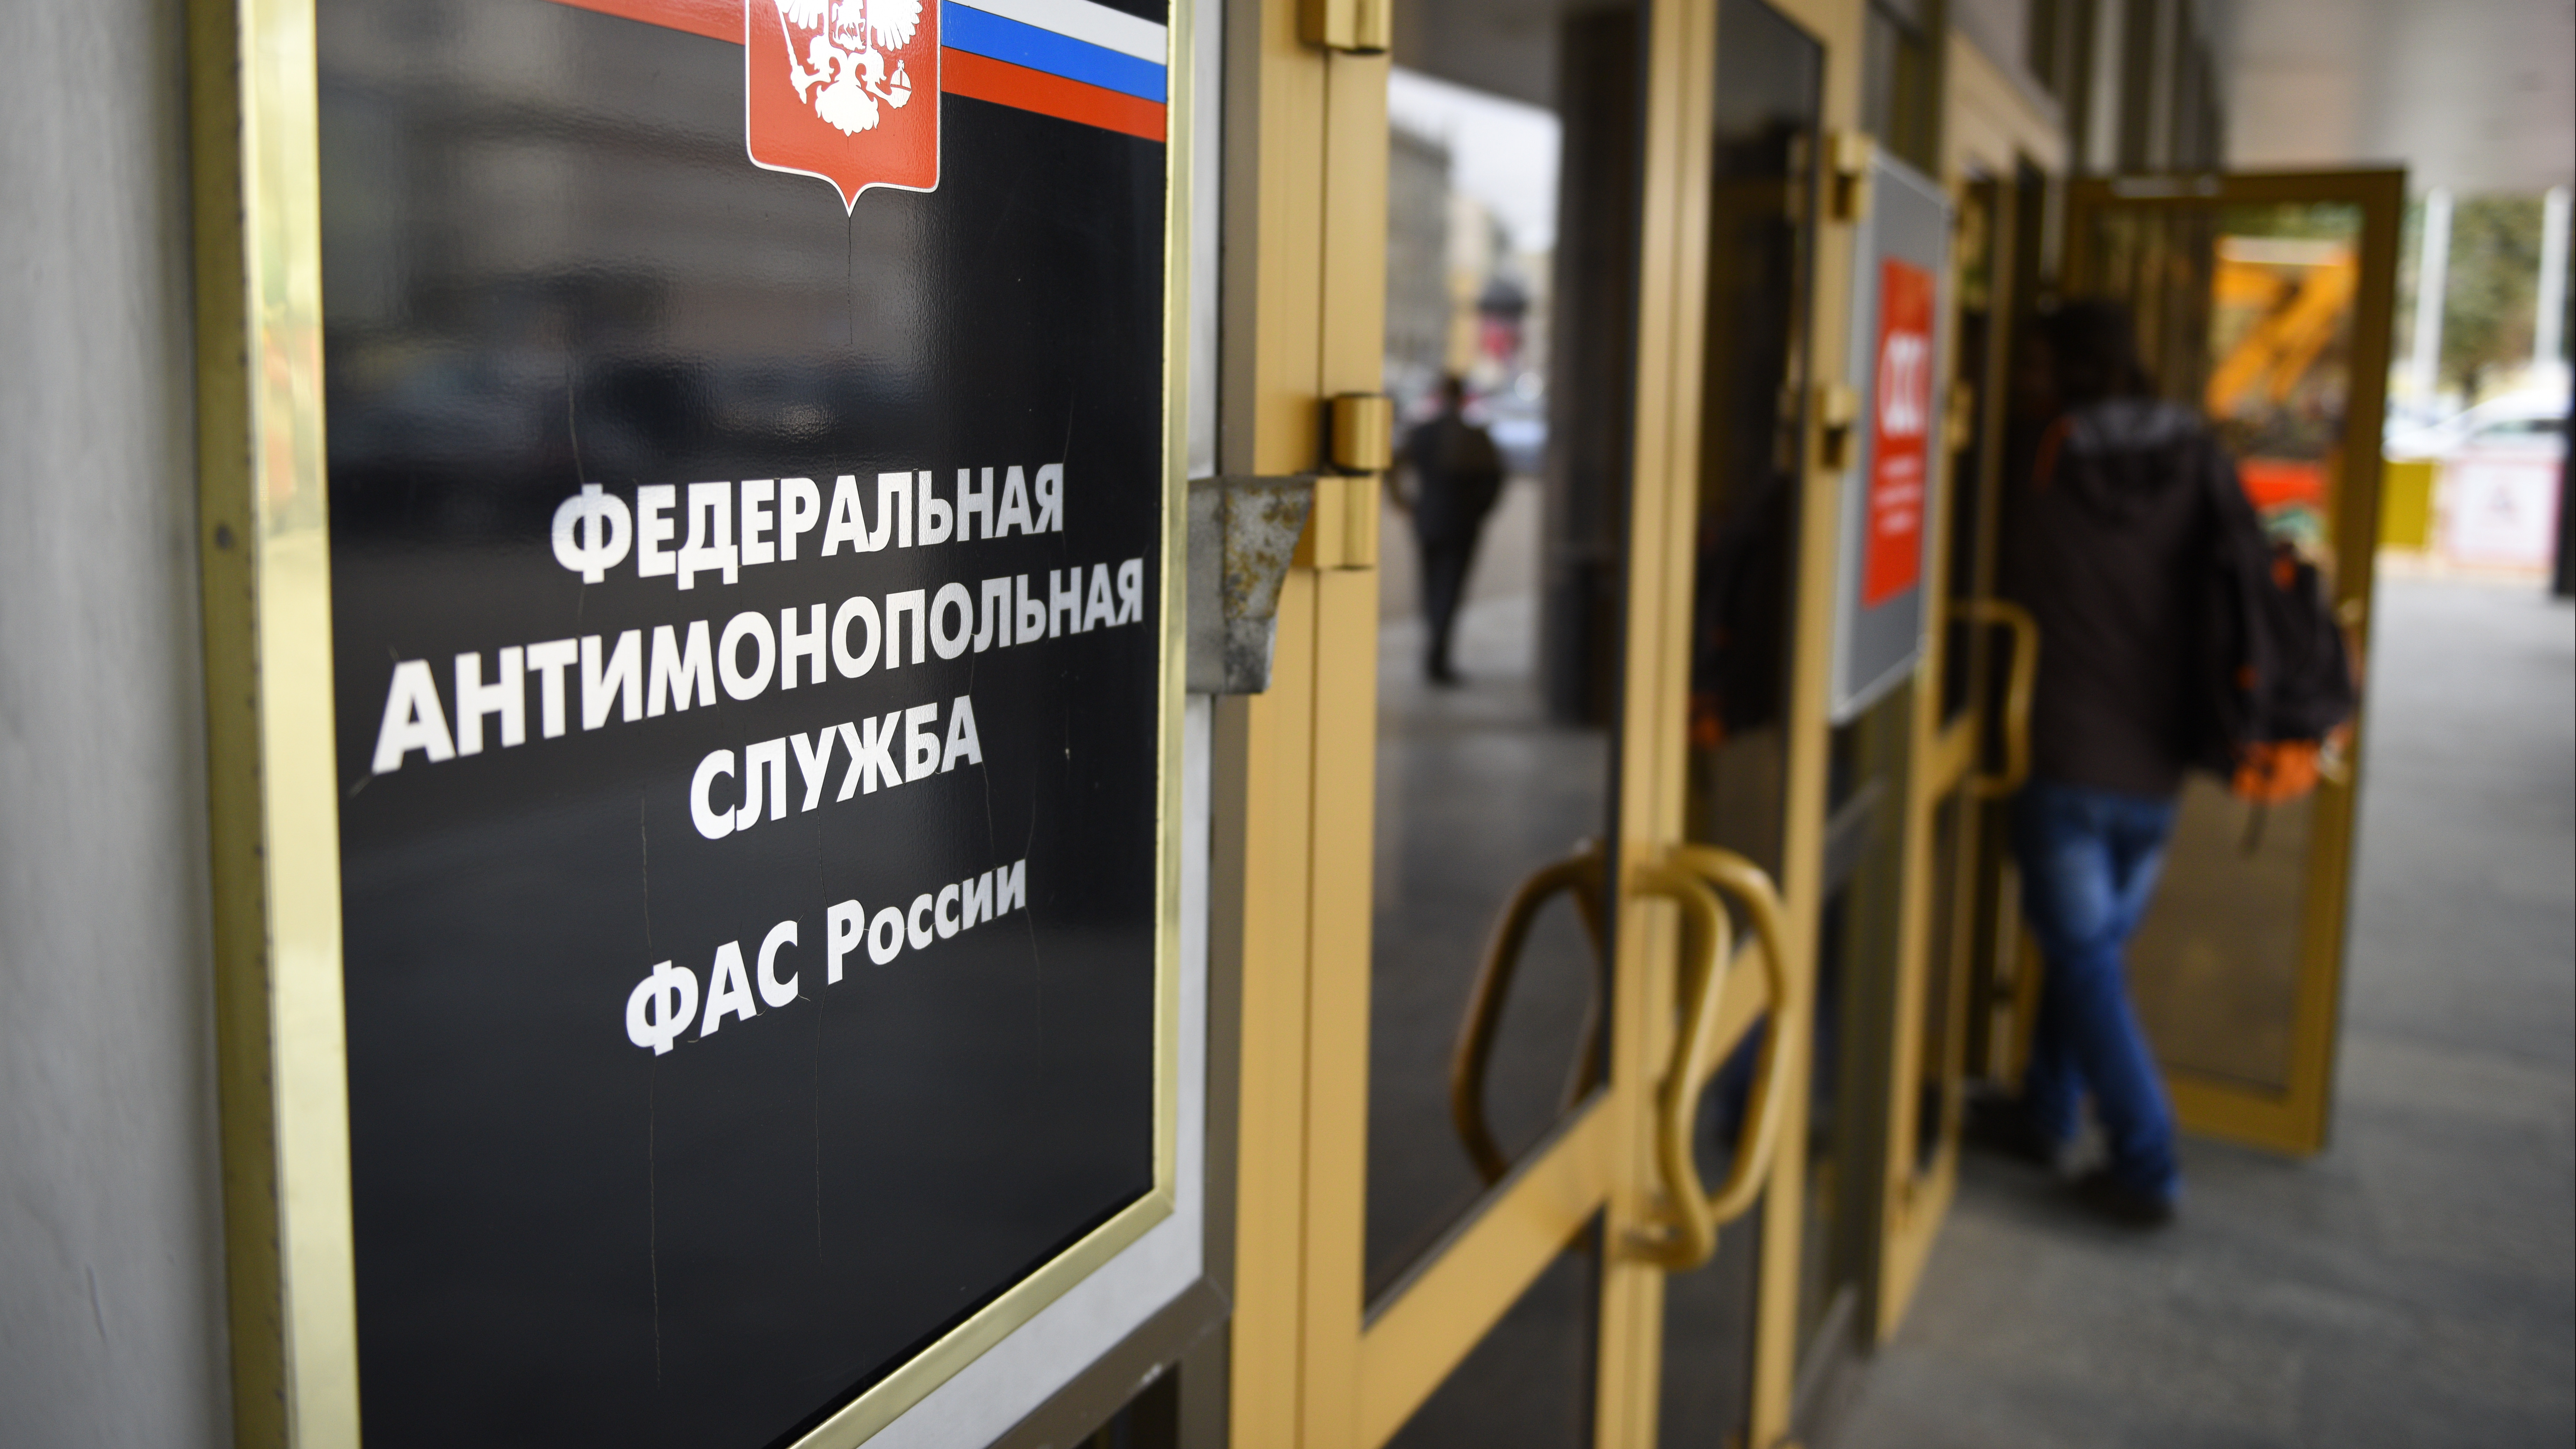 УФАС Подмосковья выявило нарушение антимонопольного закона в действиях АО «СпецВысотСтрой»